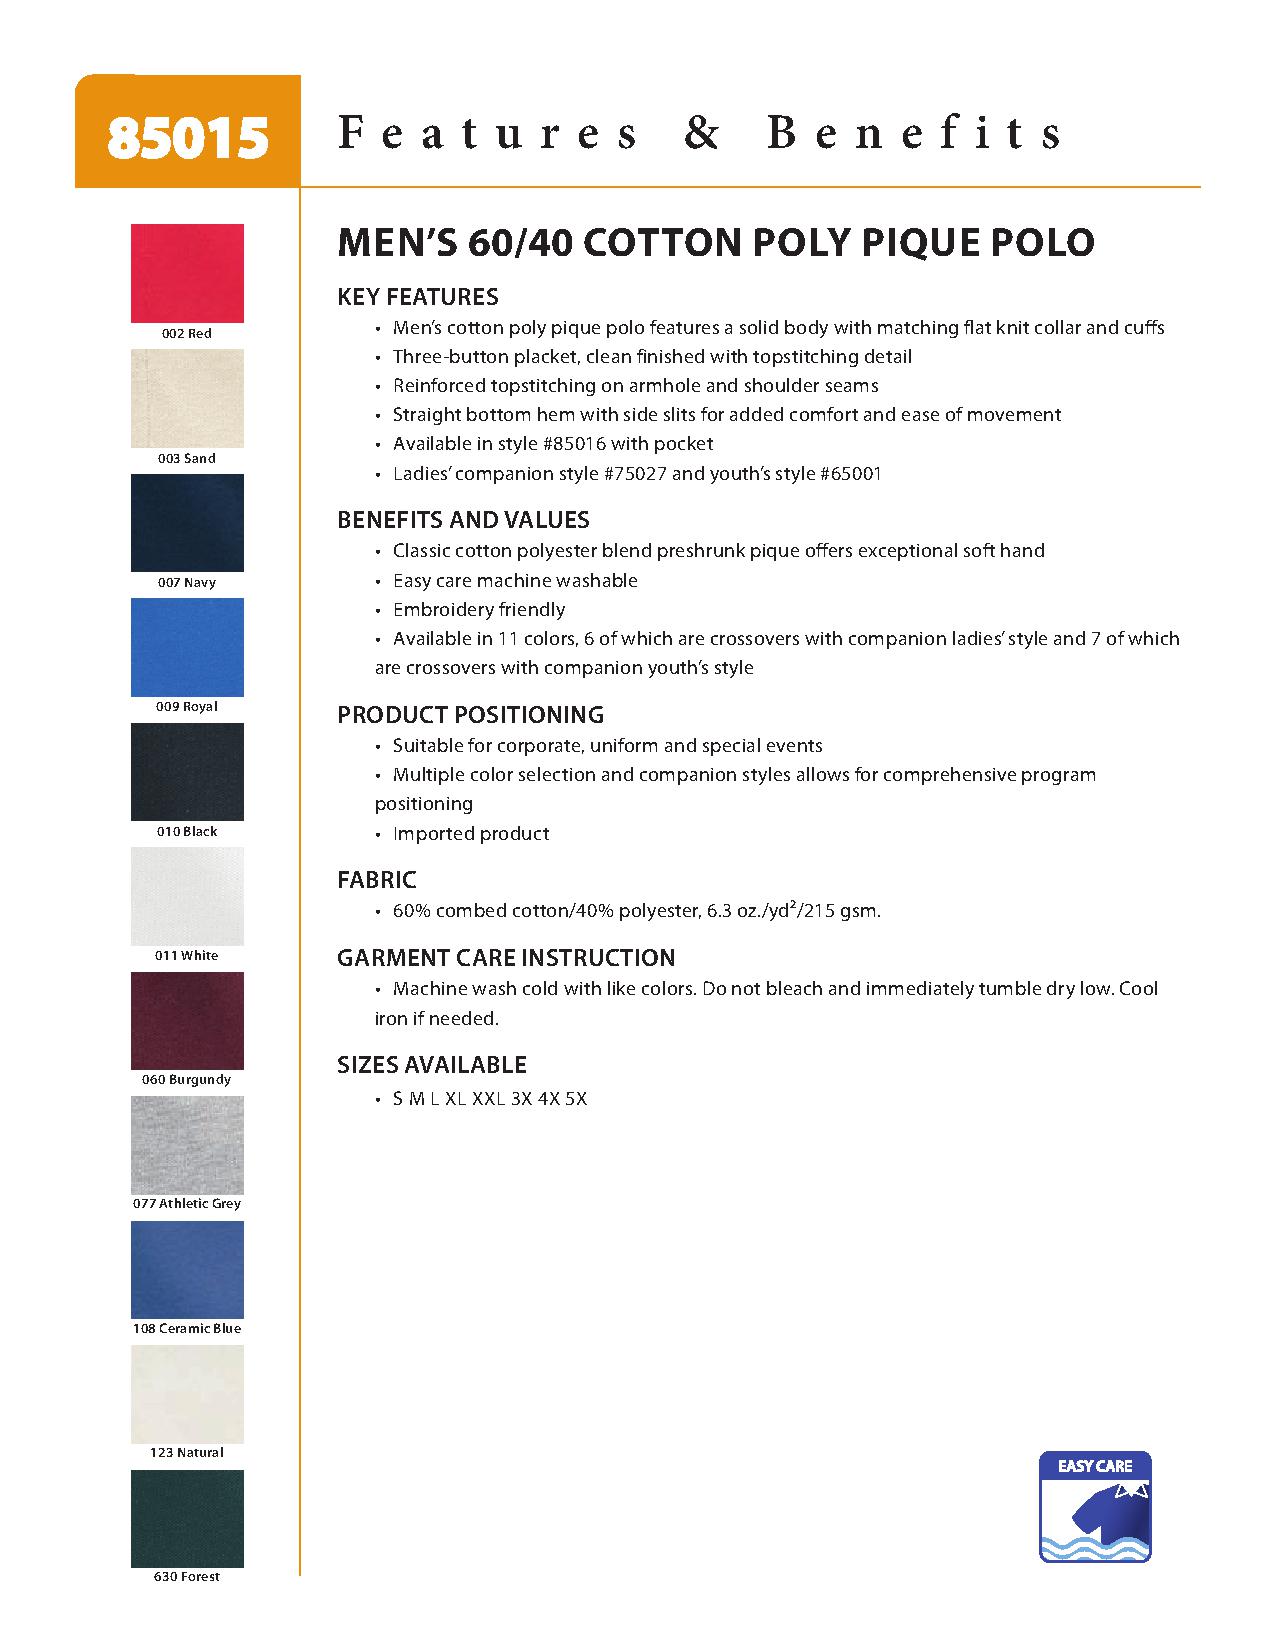 Ash City Pique 85015 - Men's Extreme Cotton Blend Pique Polo